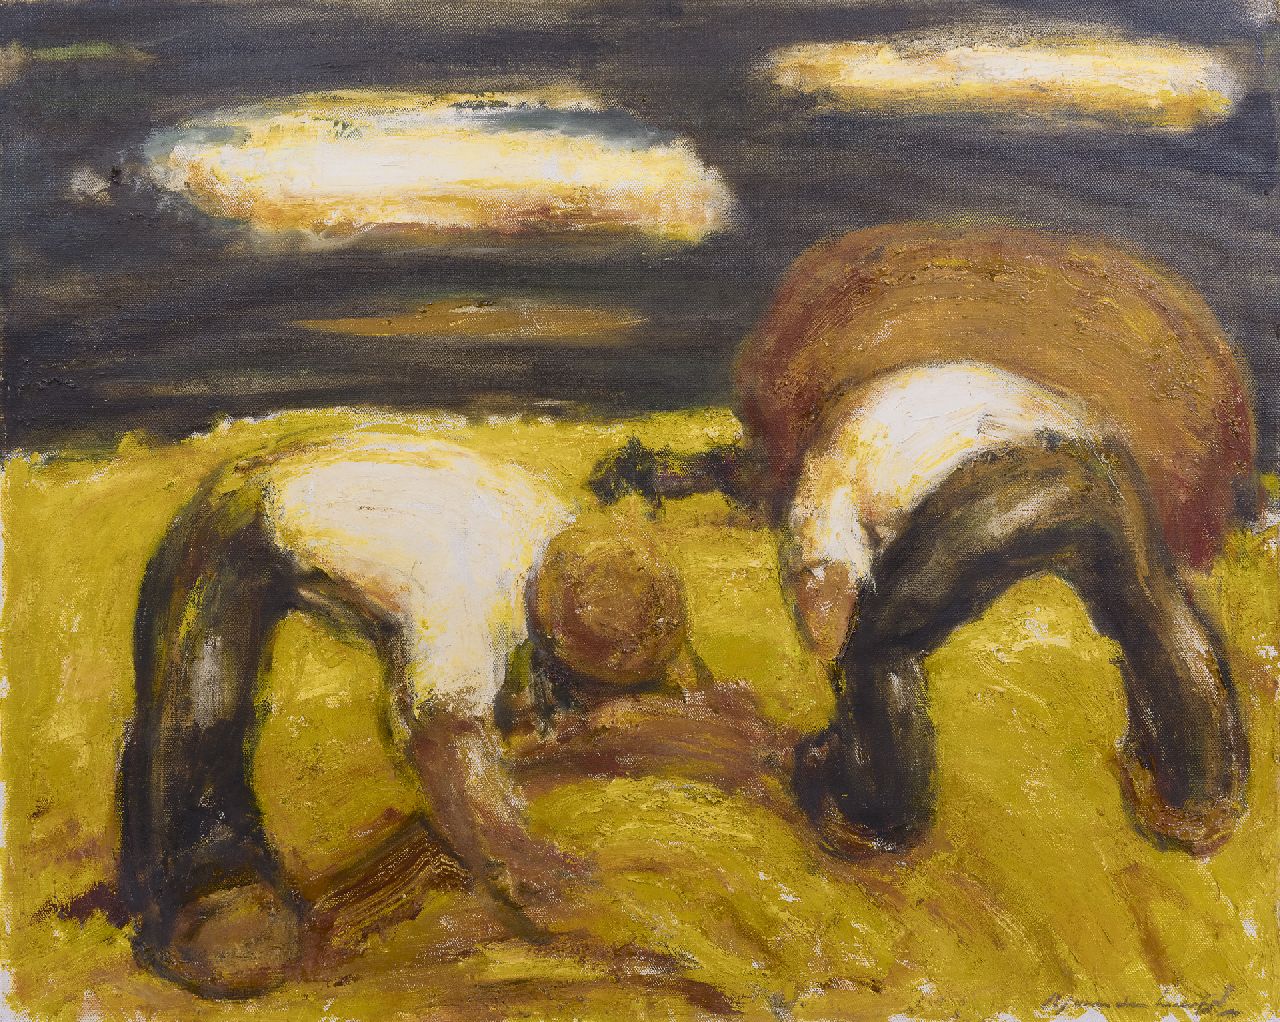 Heuvel K.J. van den | Karel Jan van den Heuvel, Harvest, oil on canvas 79.9 x 100.7 cm, signed l.r.